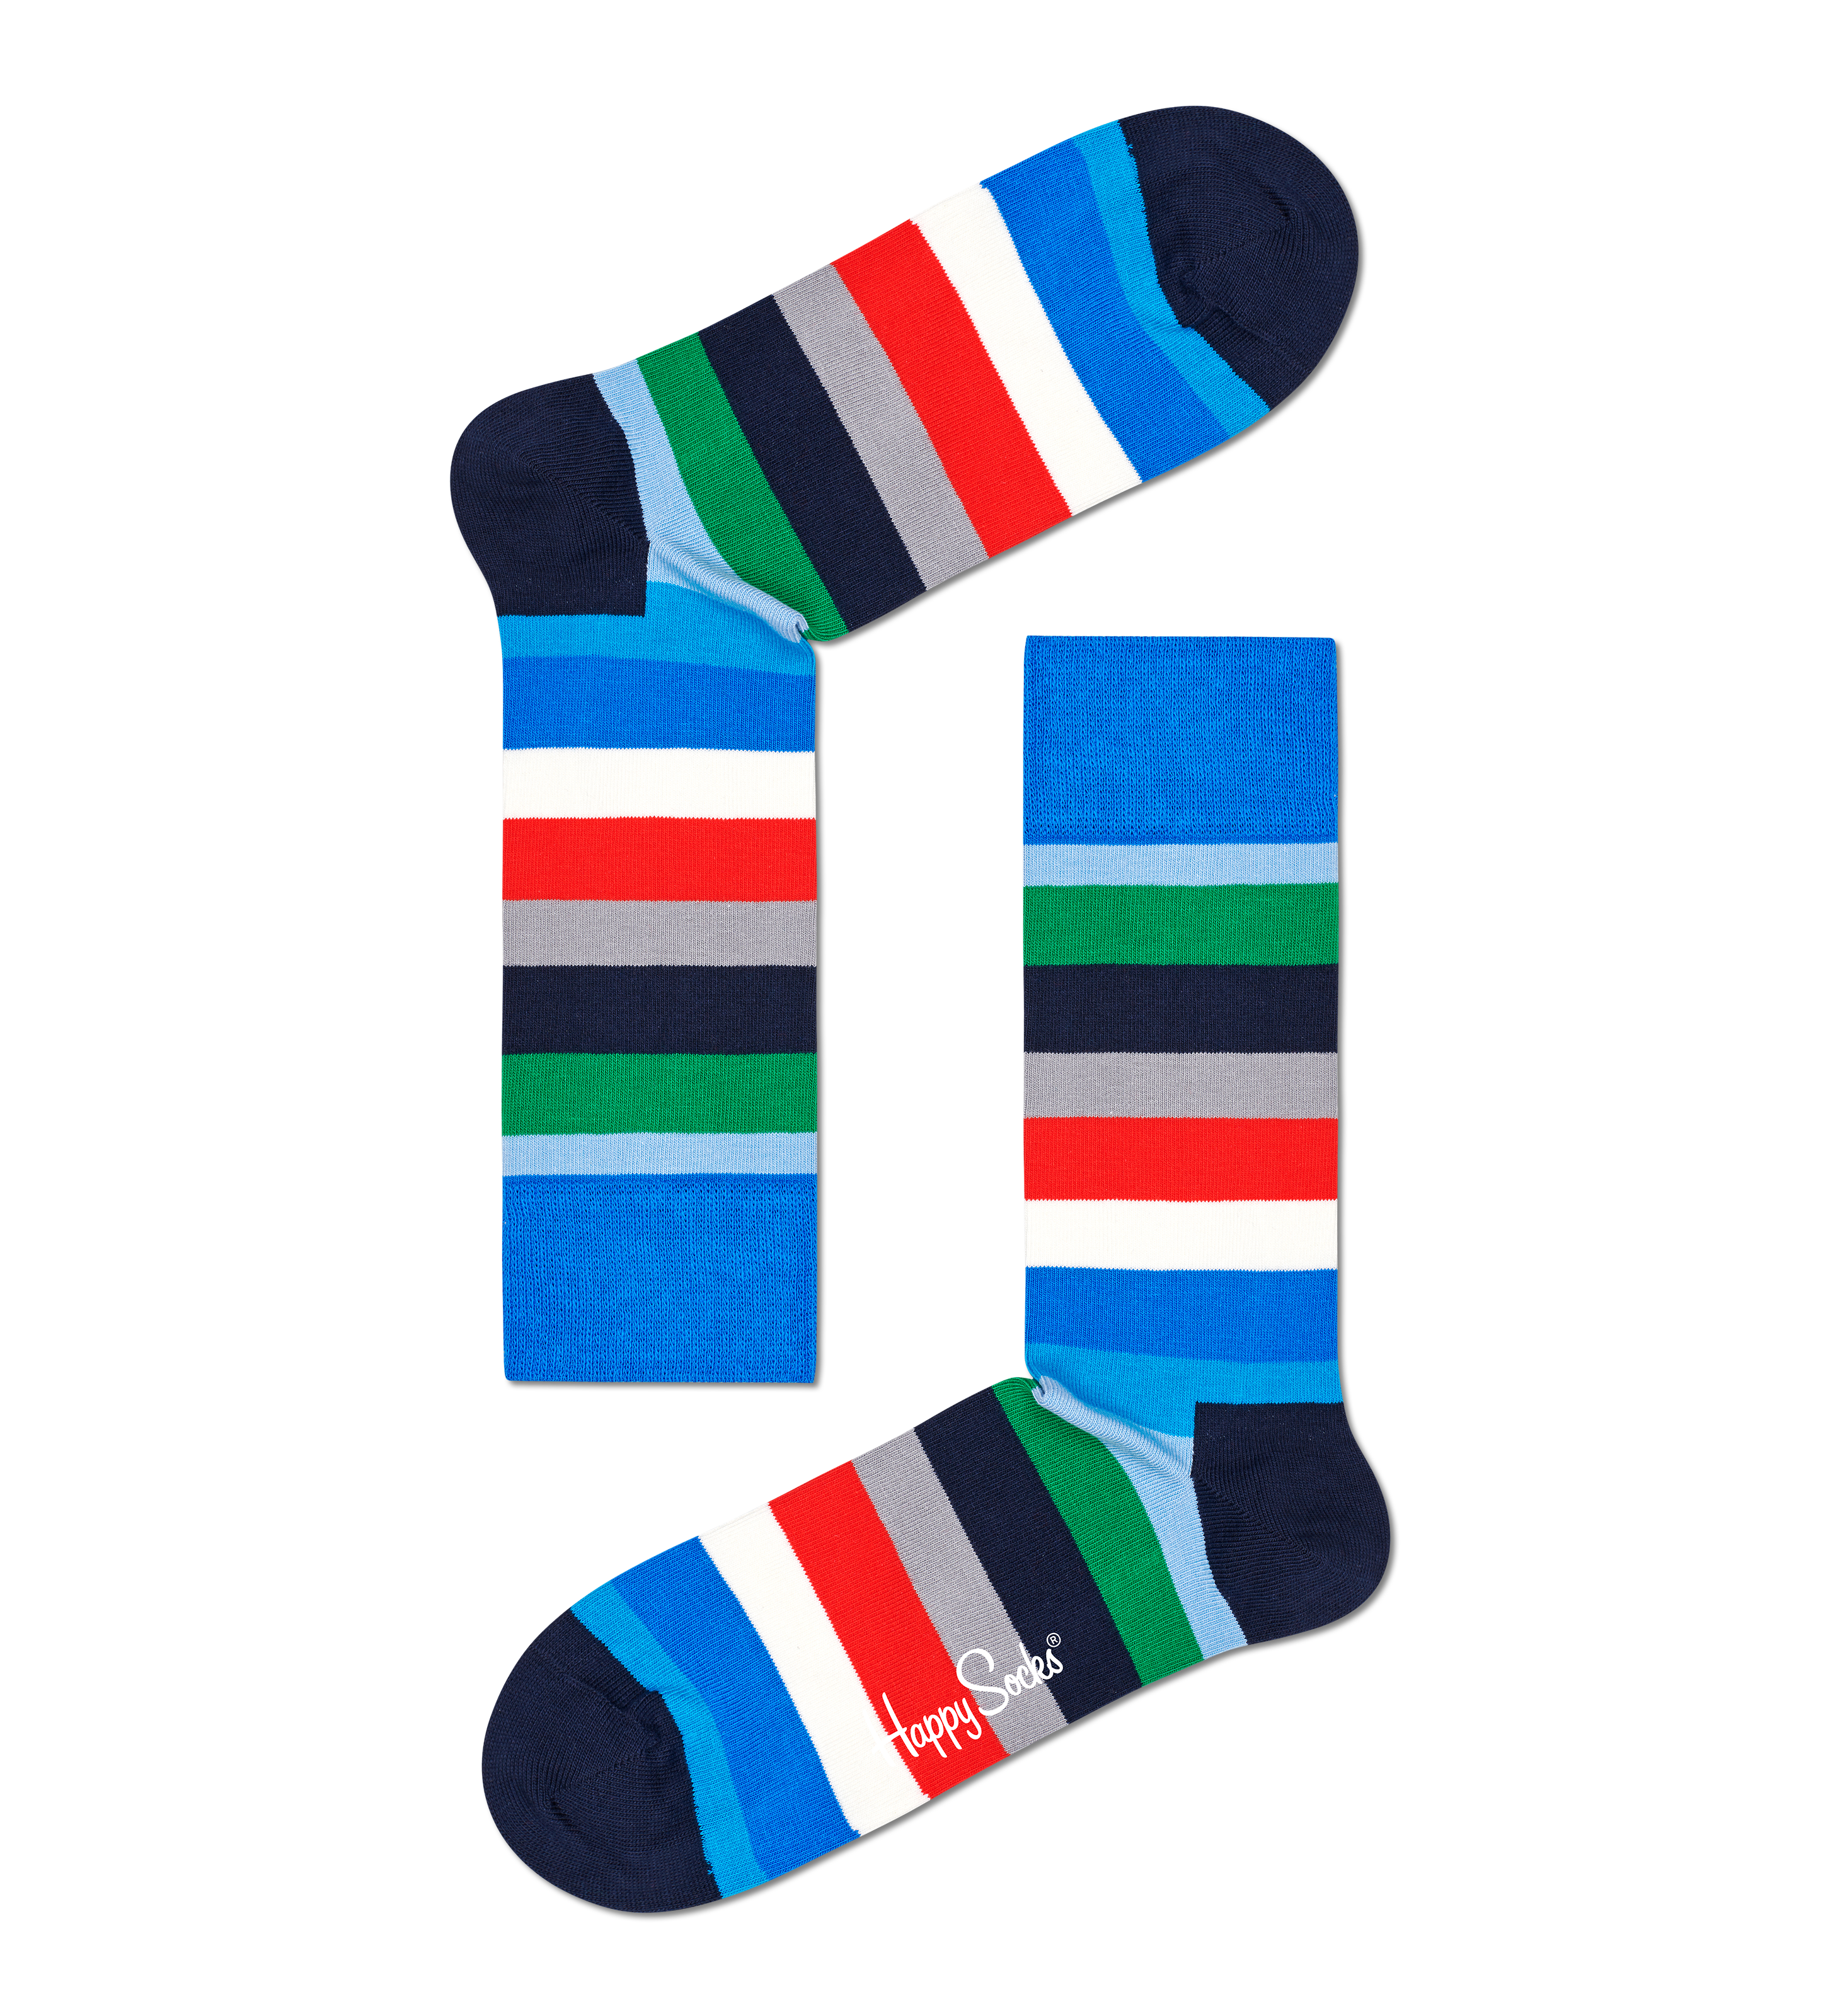 Blue Navy 4-Pack Socks Gift Set | Happy Socks US